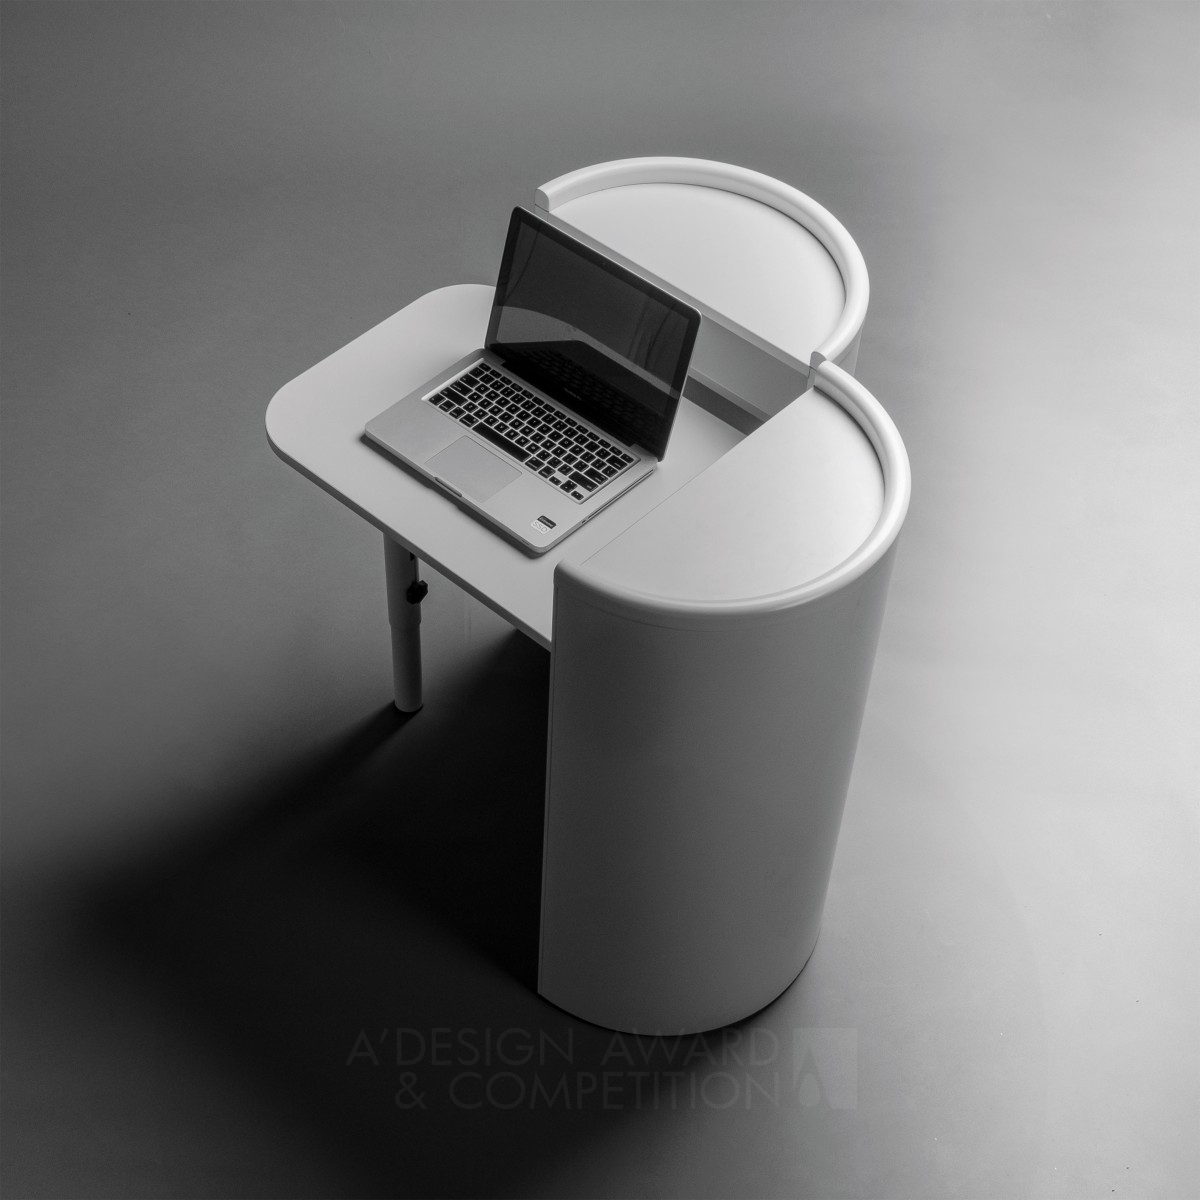 Cilindro Desk by Miguel Arruda